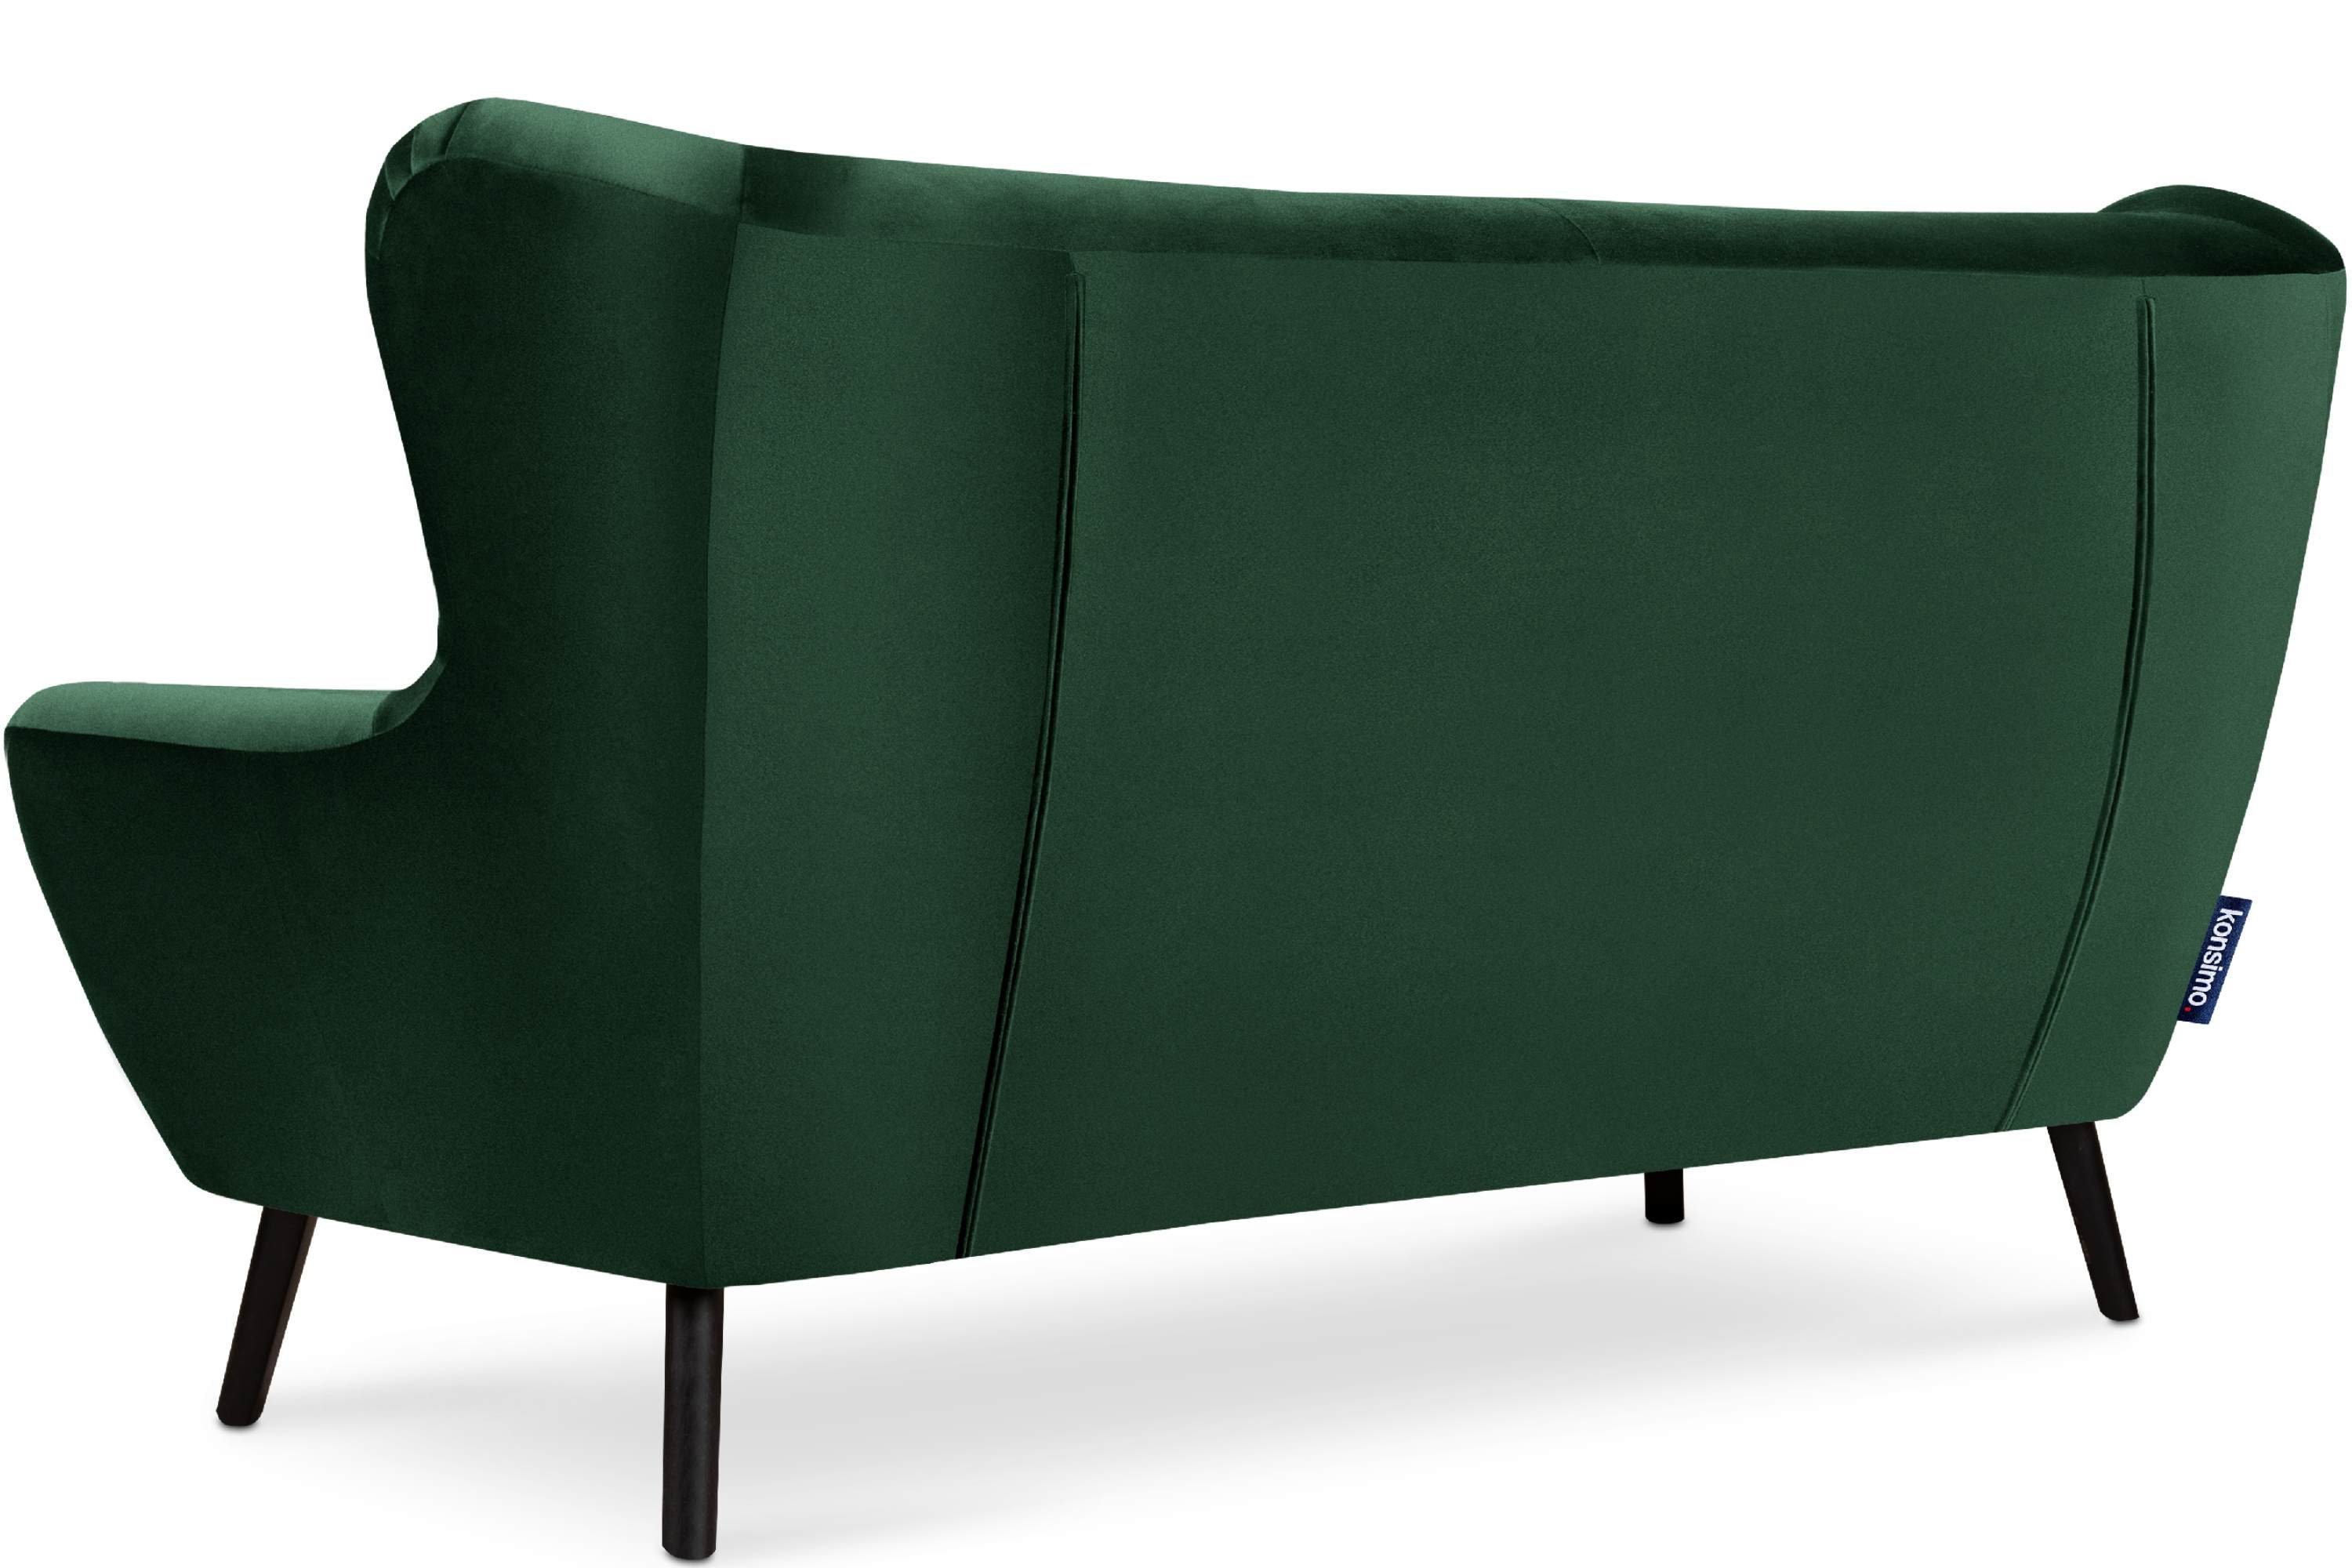 bequemer | dunkelgrün wasserabweisender Sitzer, MIRO Schaumstoff 3 im Sofa dunkelgrün Konsimo Oberstoff, Sitz Sofa